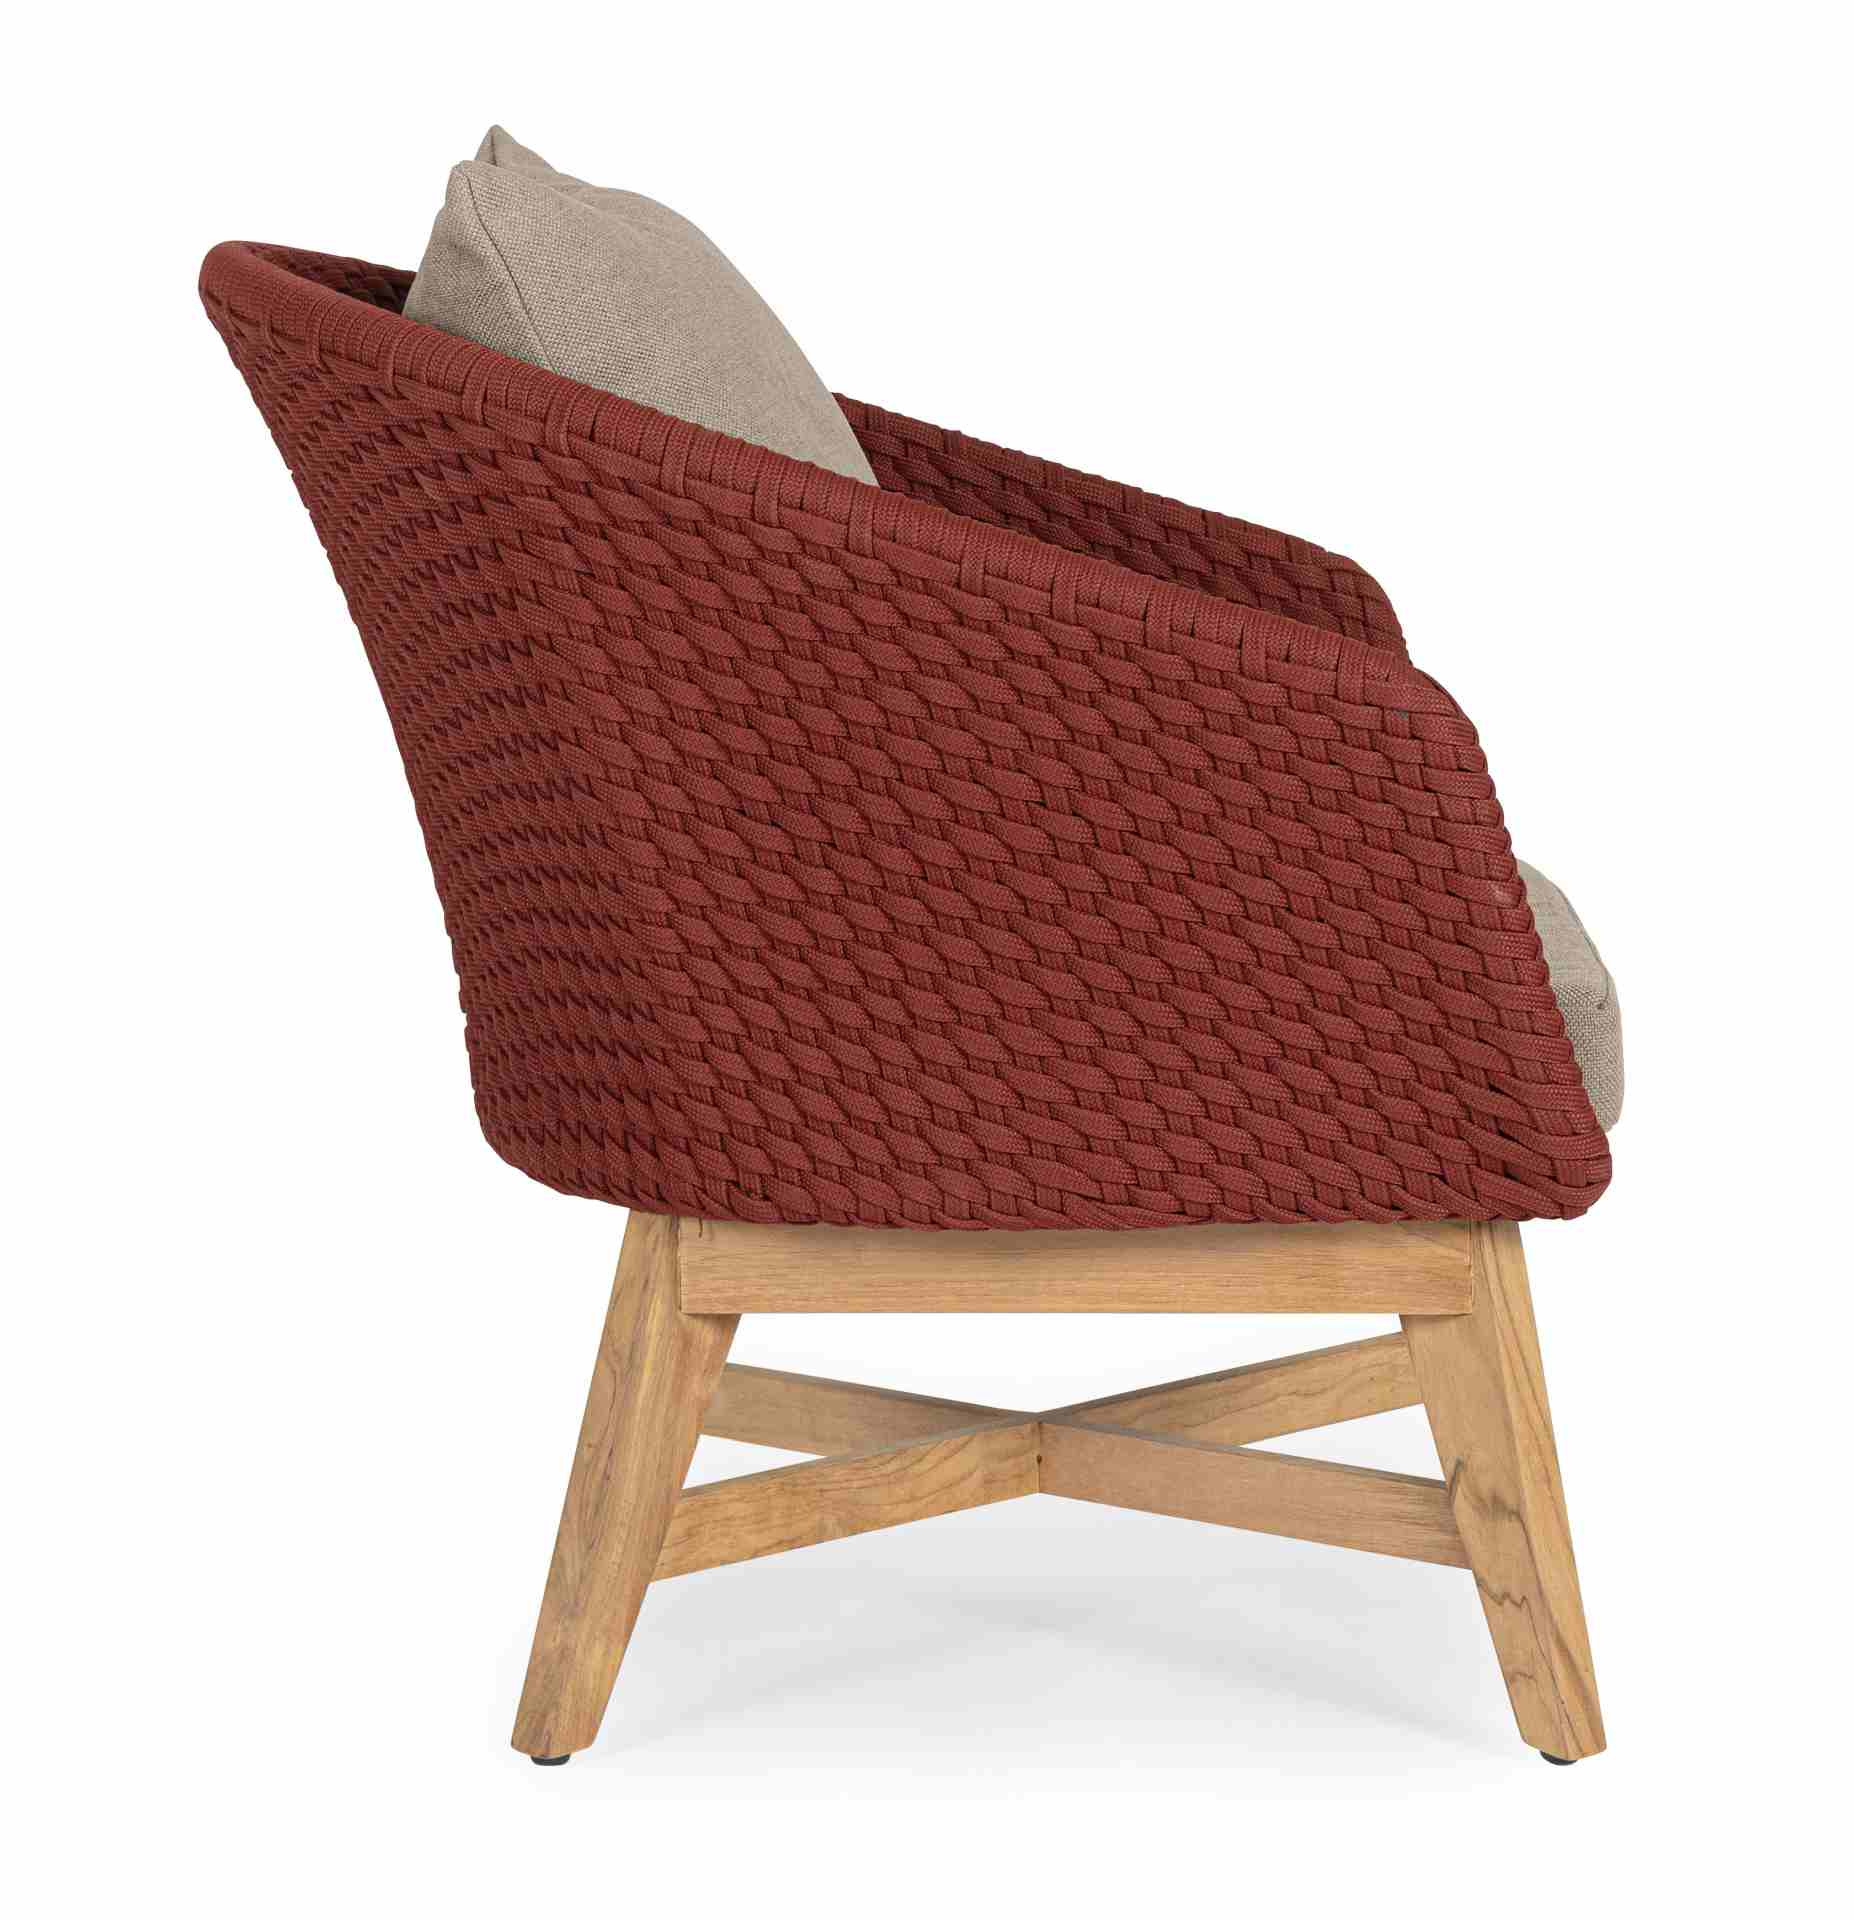 Der Gartensessel Coachella überzeugt mit seinem modernen Design. Gefertigt wurde er aus Olefin-Stoff, welcher einen roten Farbton besitzt. Das Gestell ist aus Teakholz und hat eine natürliche Farbe. Der Sessel verfügt über eine Sitzhöhe von 39 cm und ist 